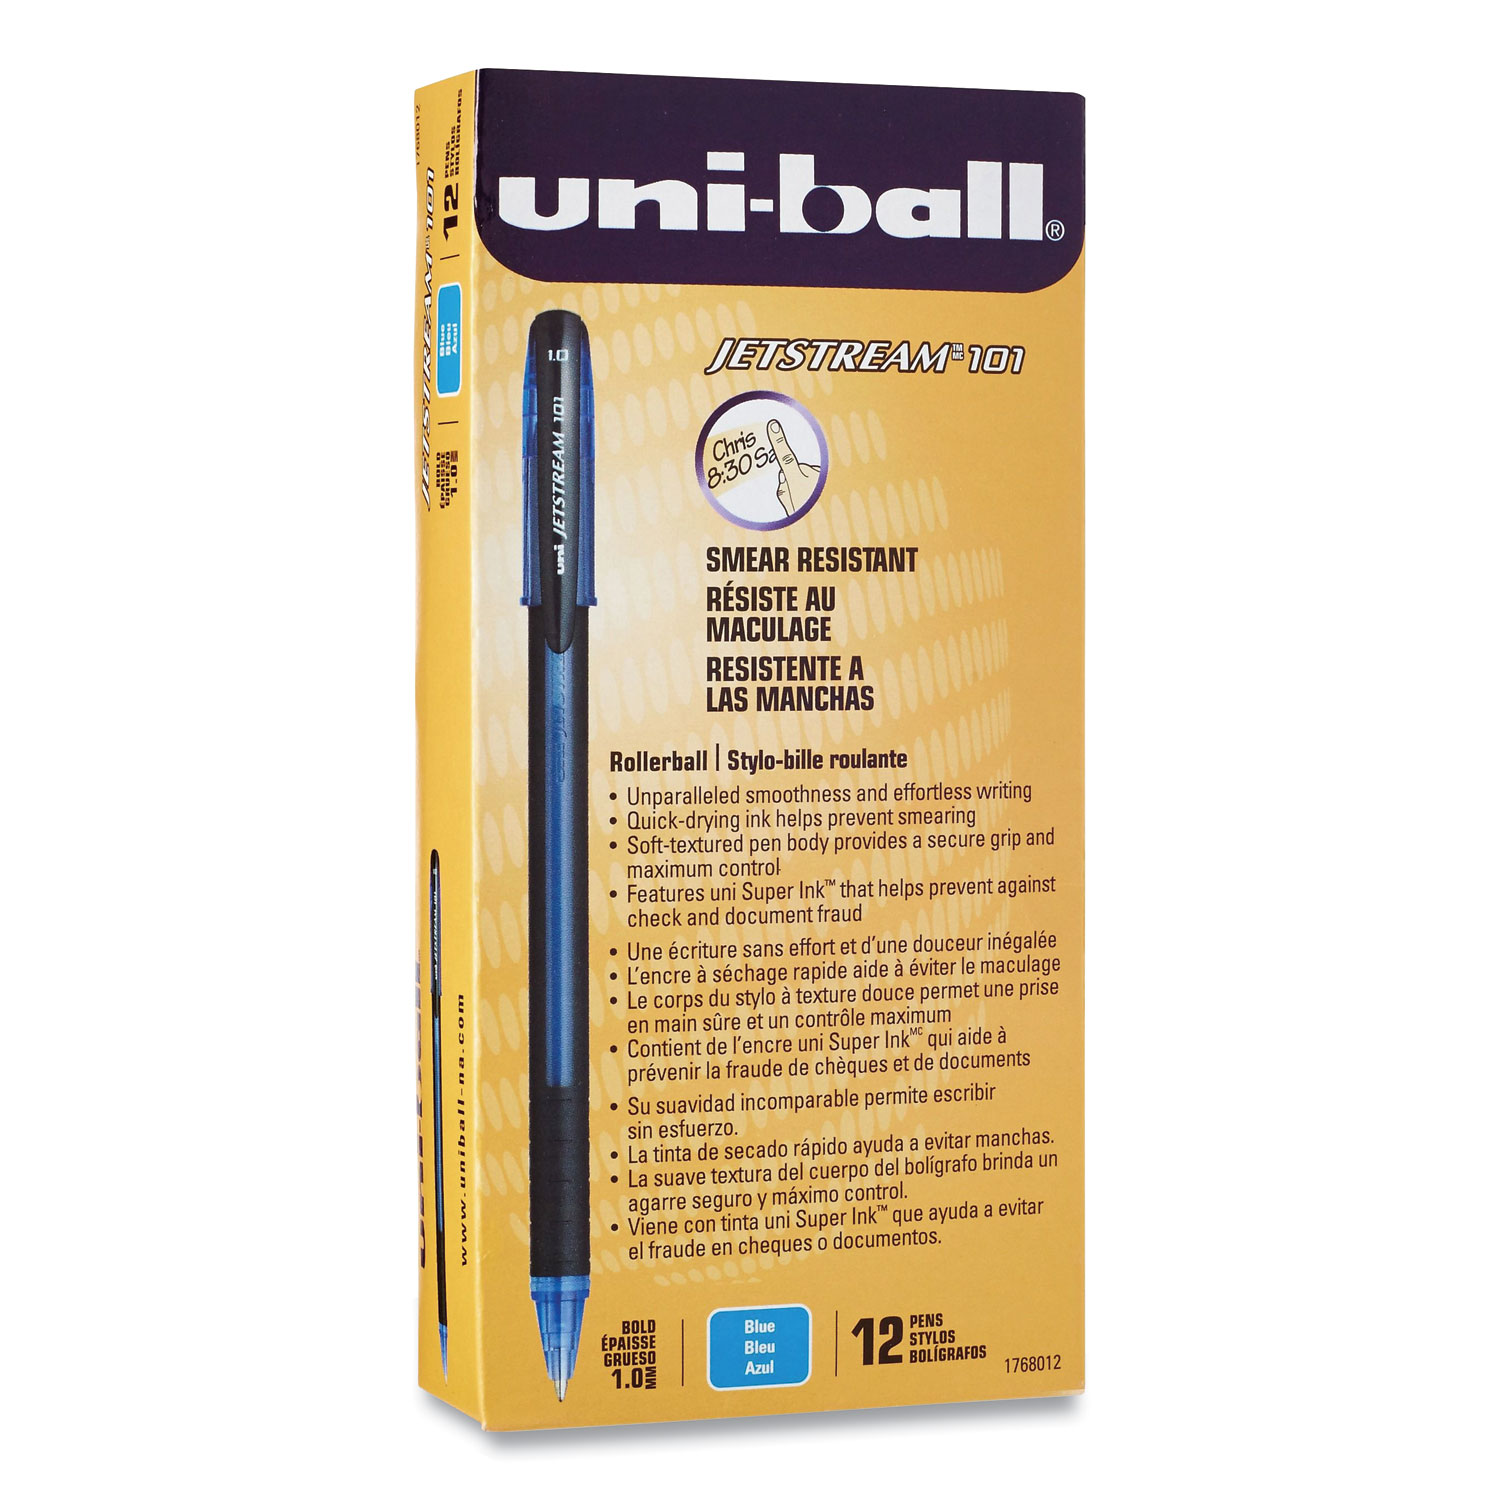  uni-ball 1768012 Jetstream 101 Stick Roller Ball Pen, Bold 1 mm, Blue Ink/Barrel, Dozen (UBC892693) 